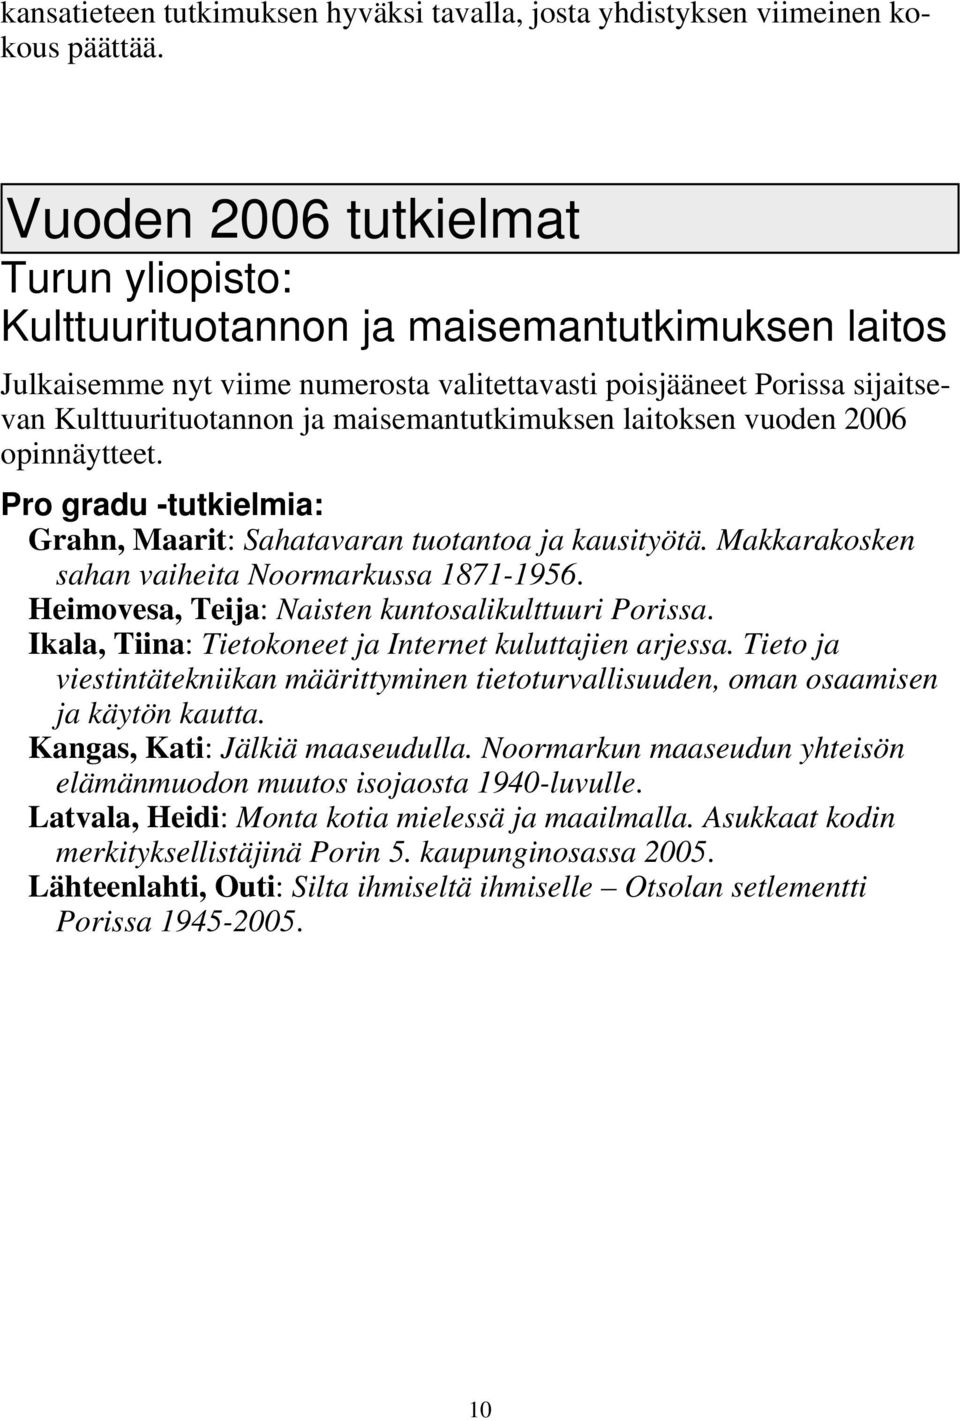 maisemantutkimuksen laitoksen vuoden 2006 opinnäytteet. Pro gradu -tutkielmia: Grahn, Maarit: Sahatavaran tuotantoa ja kausityötä. Makkarakosken sahan vaiheita Noormarkussa 1871-1956.